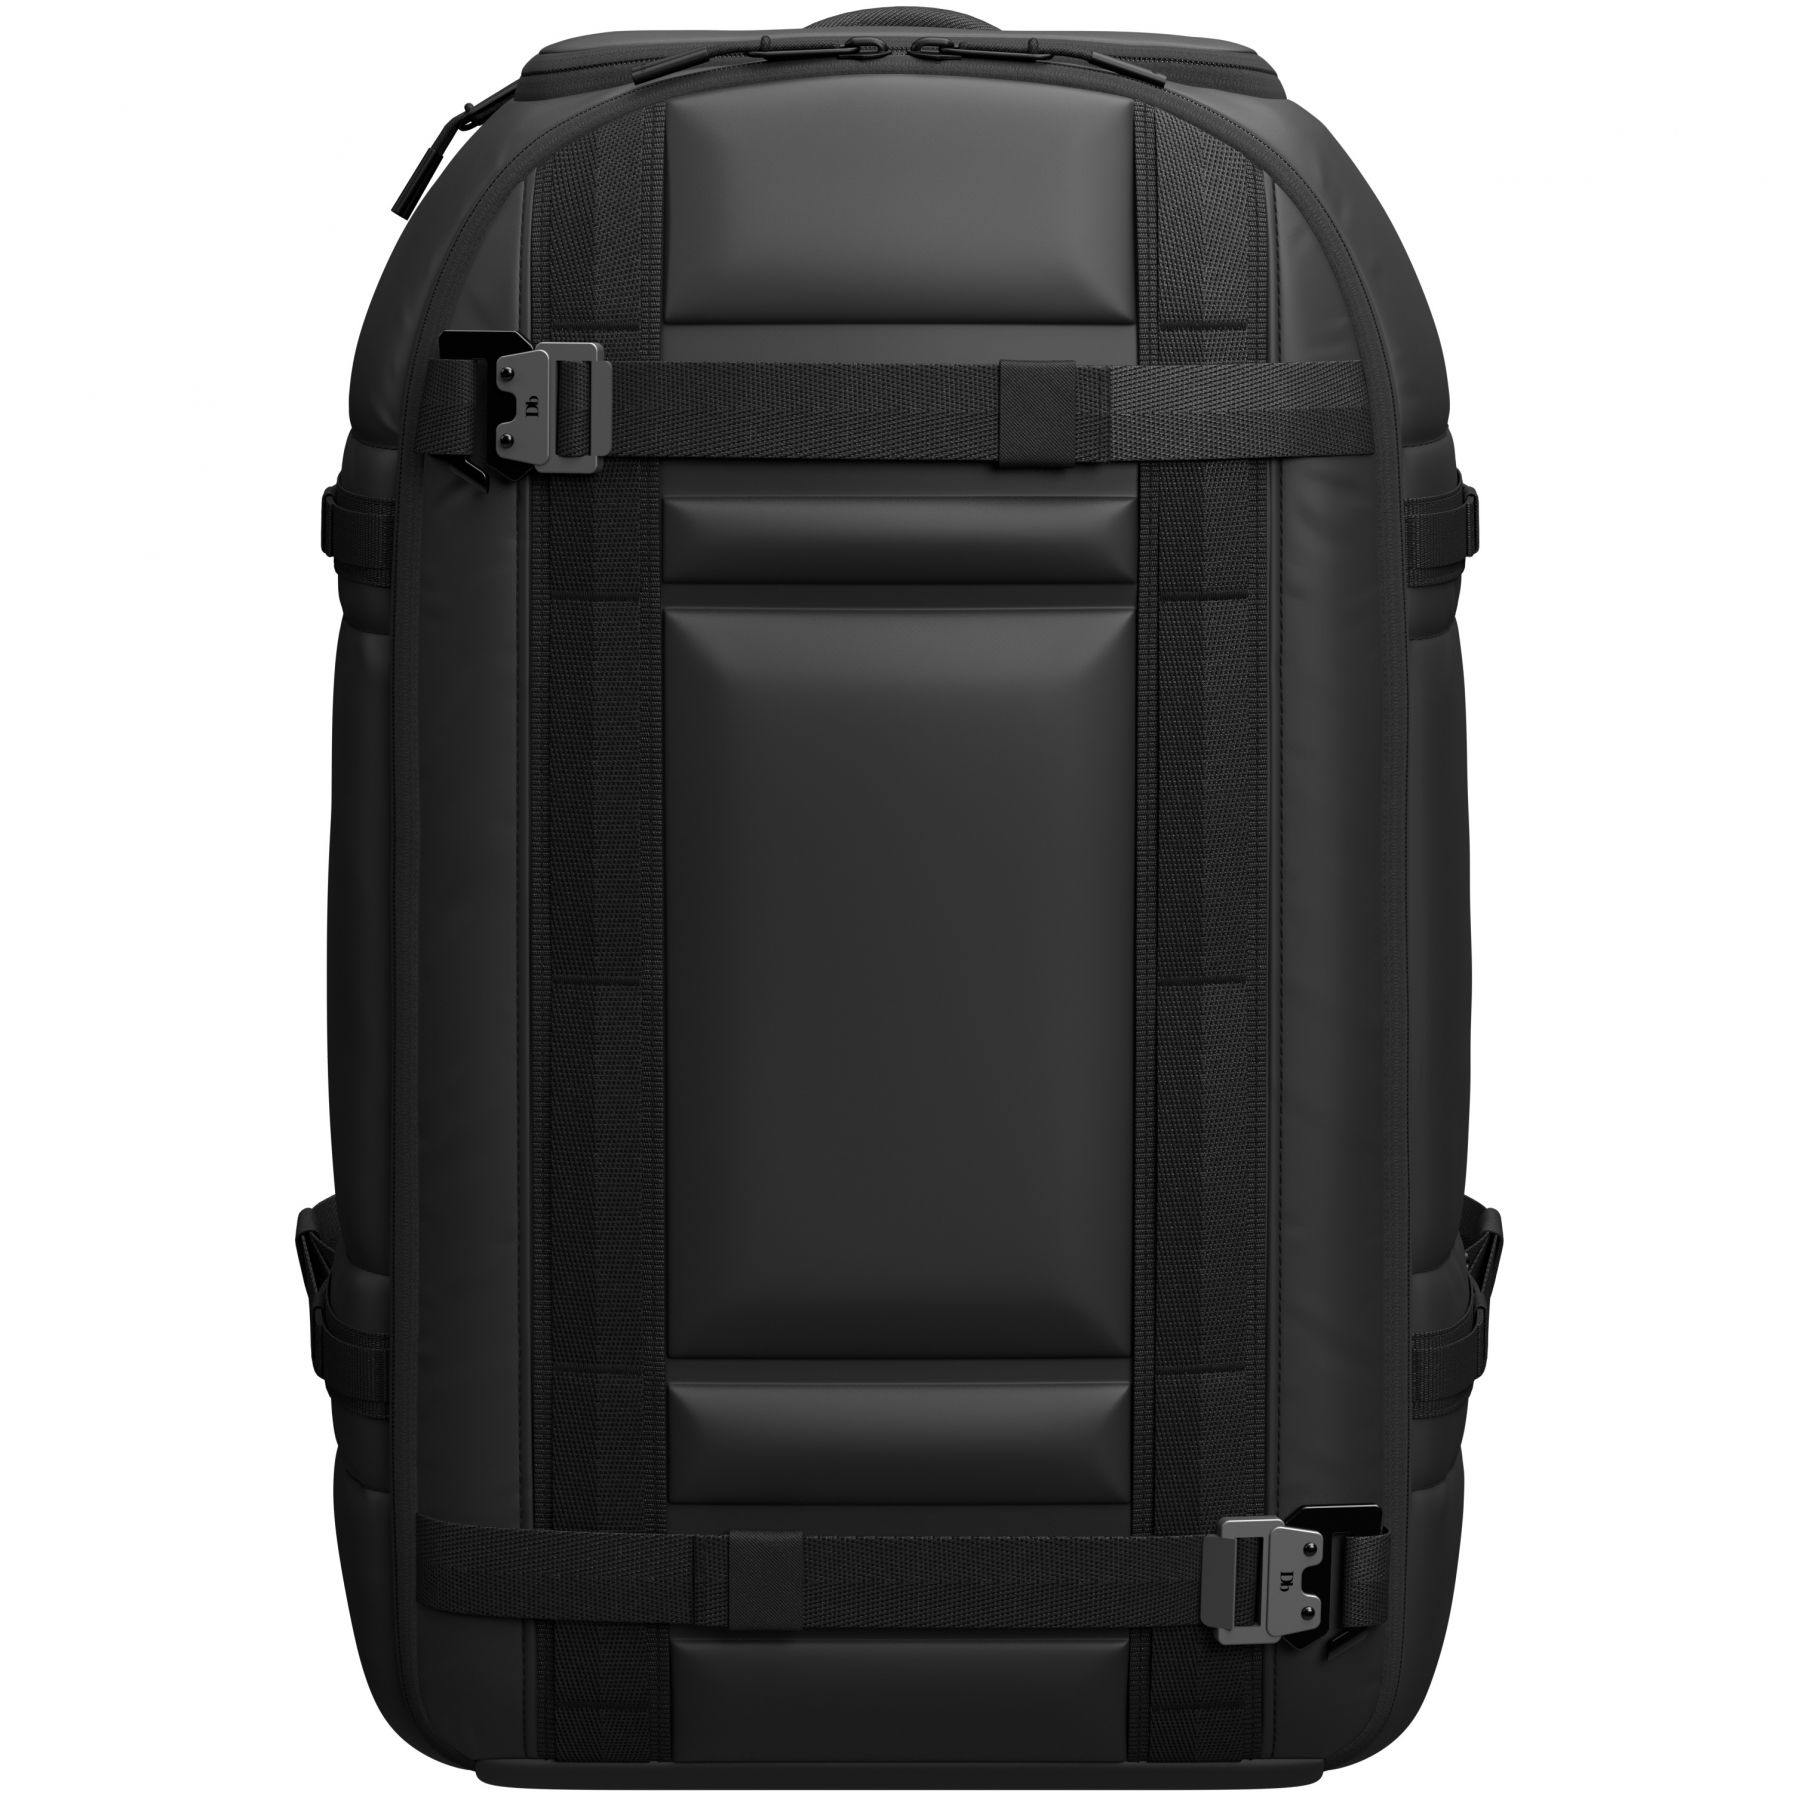 Brug Db Ramverk Pro, 32L, rygsæk, black out til en forbedret oplevelse